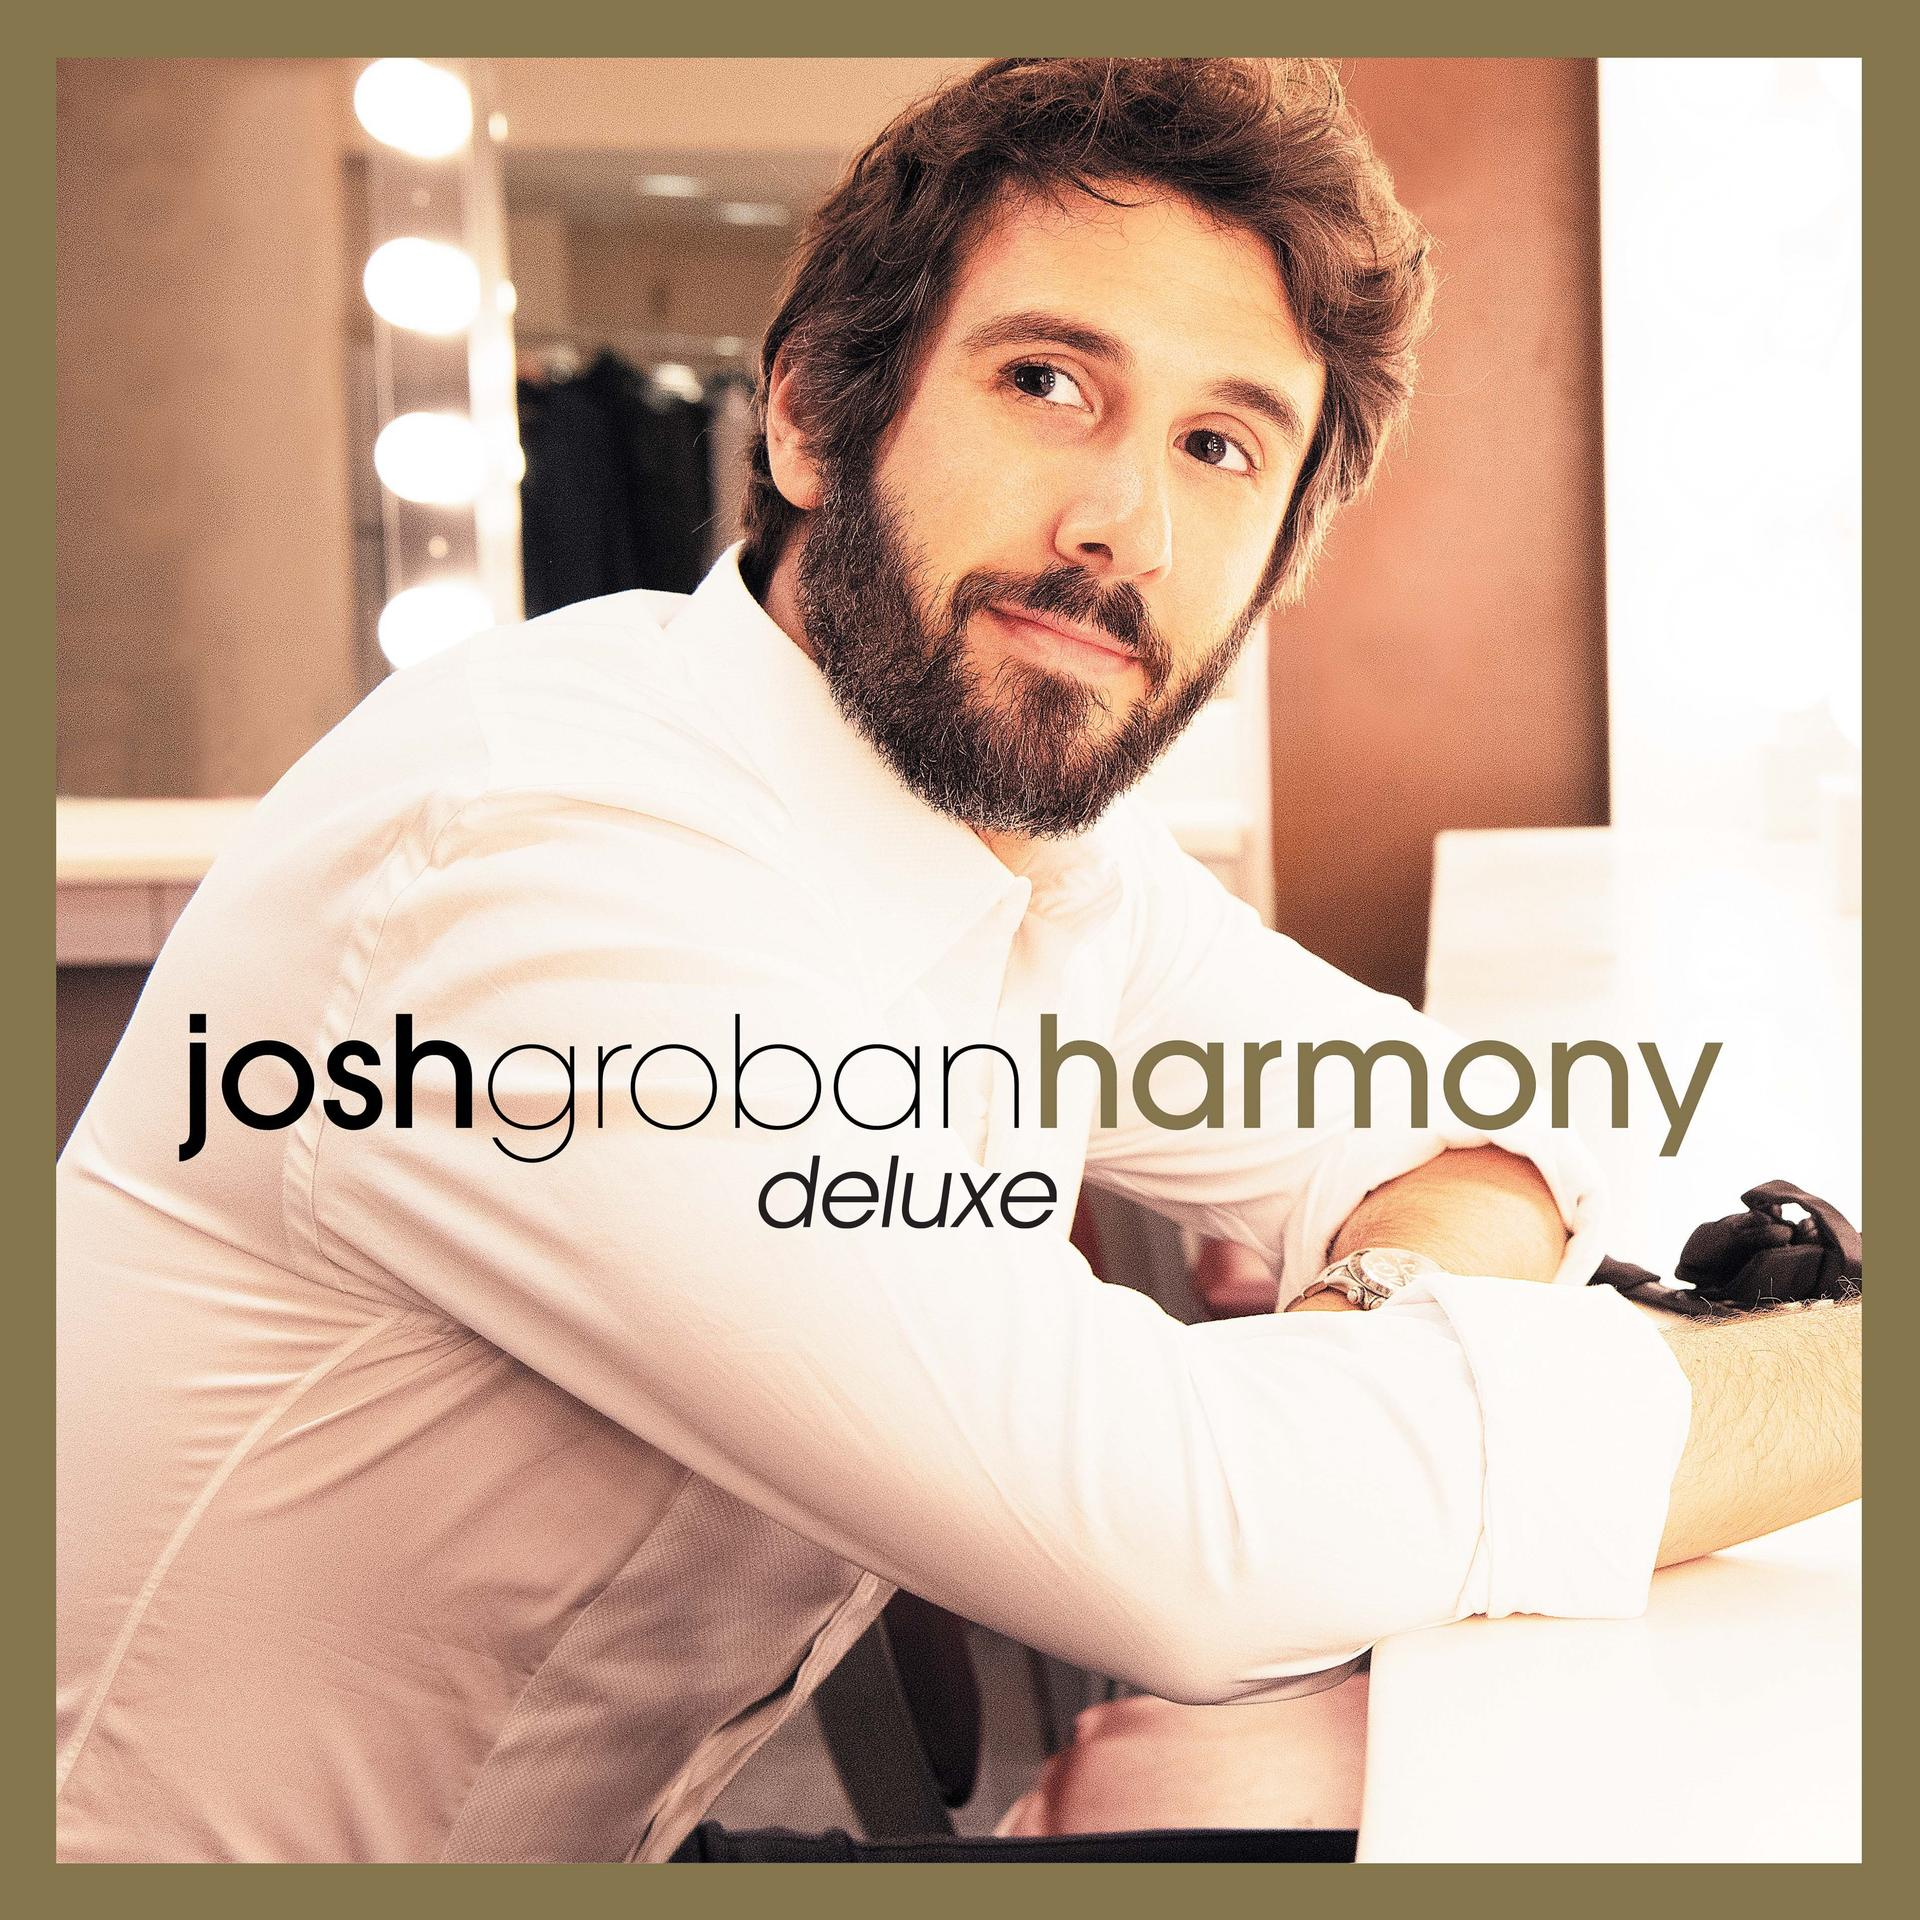 Josh Groban - (Deluxe) (CD) - Harmony